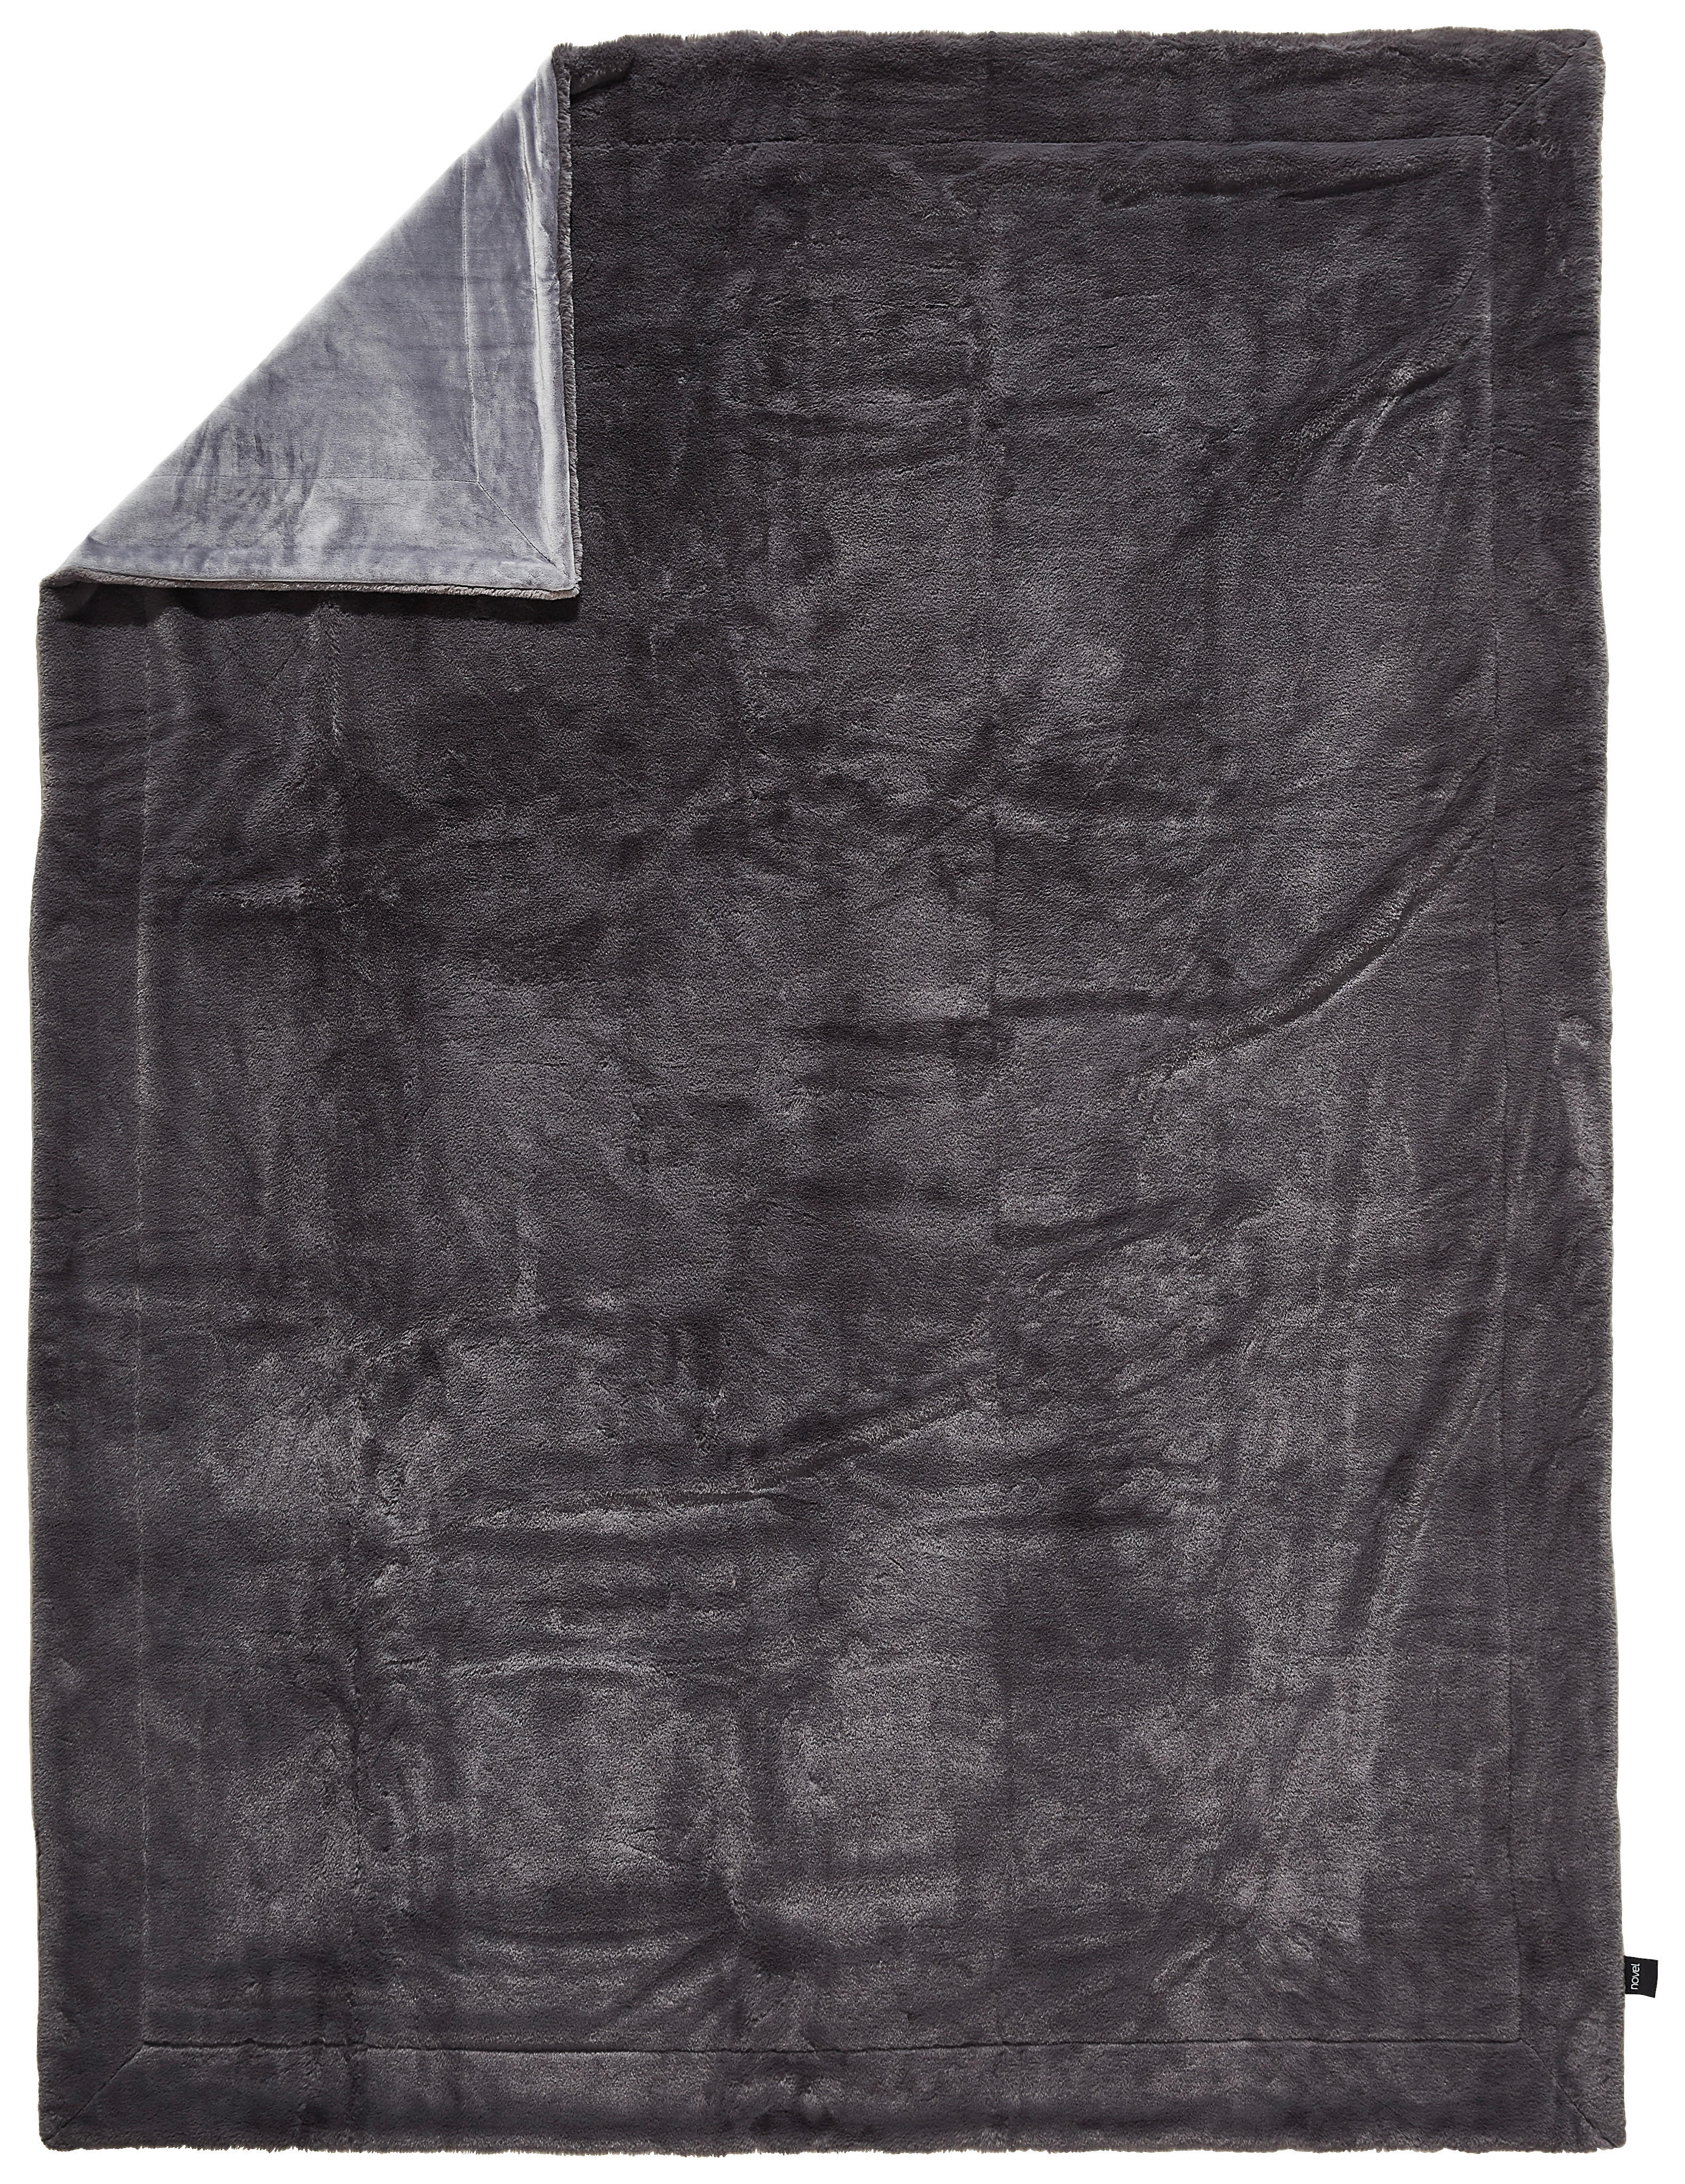 FELLDECKE 150/200 cm  - Anthrazit, Design, Textil (150/200cm) - Novel